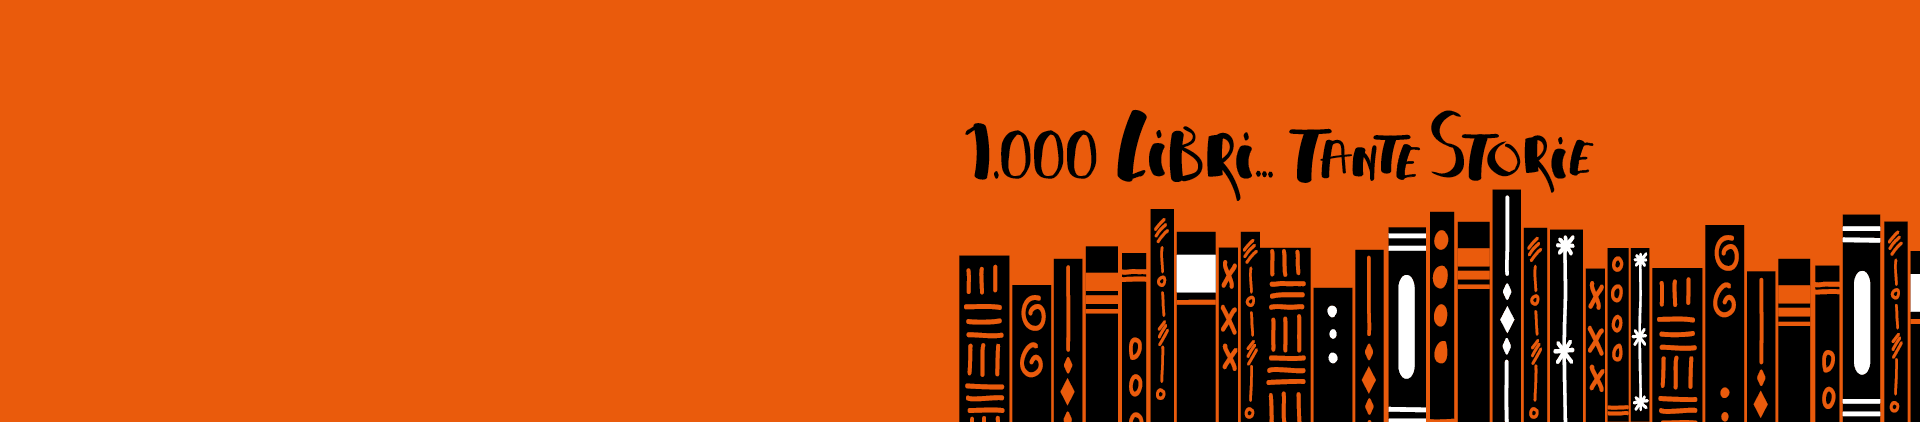 1000 libri... tante storie | Giunti Scuola